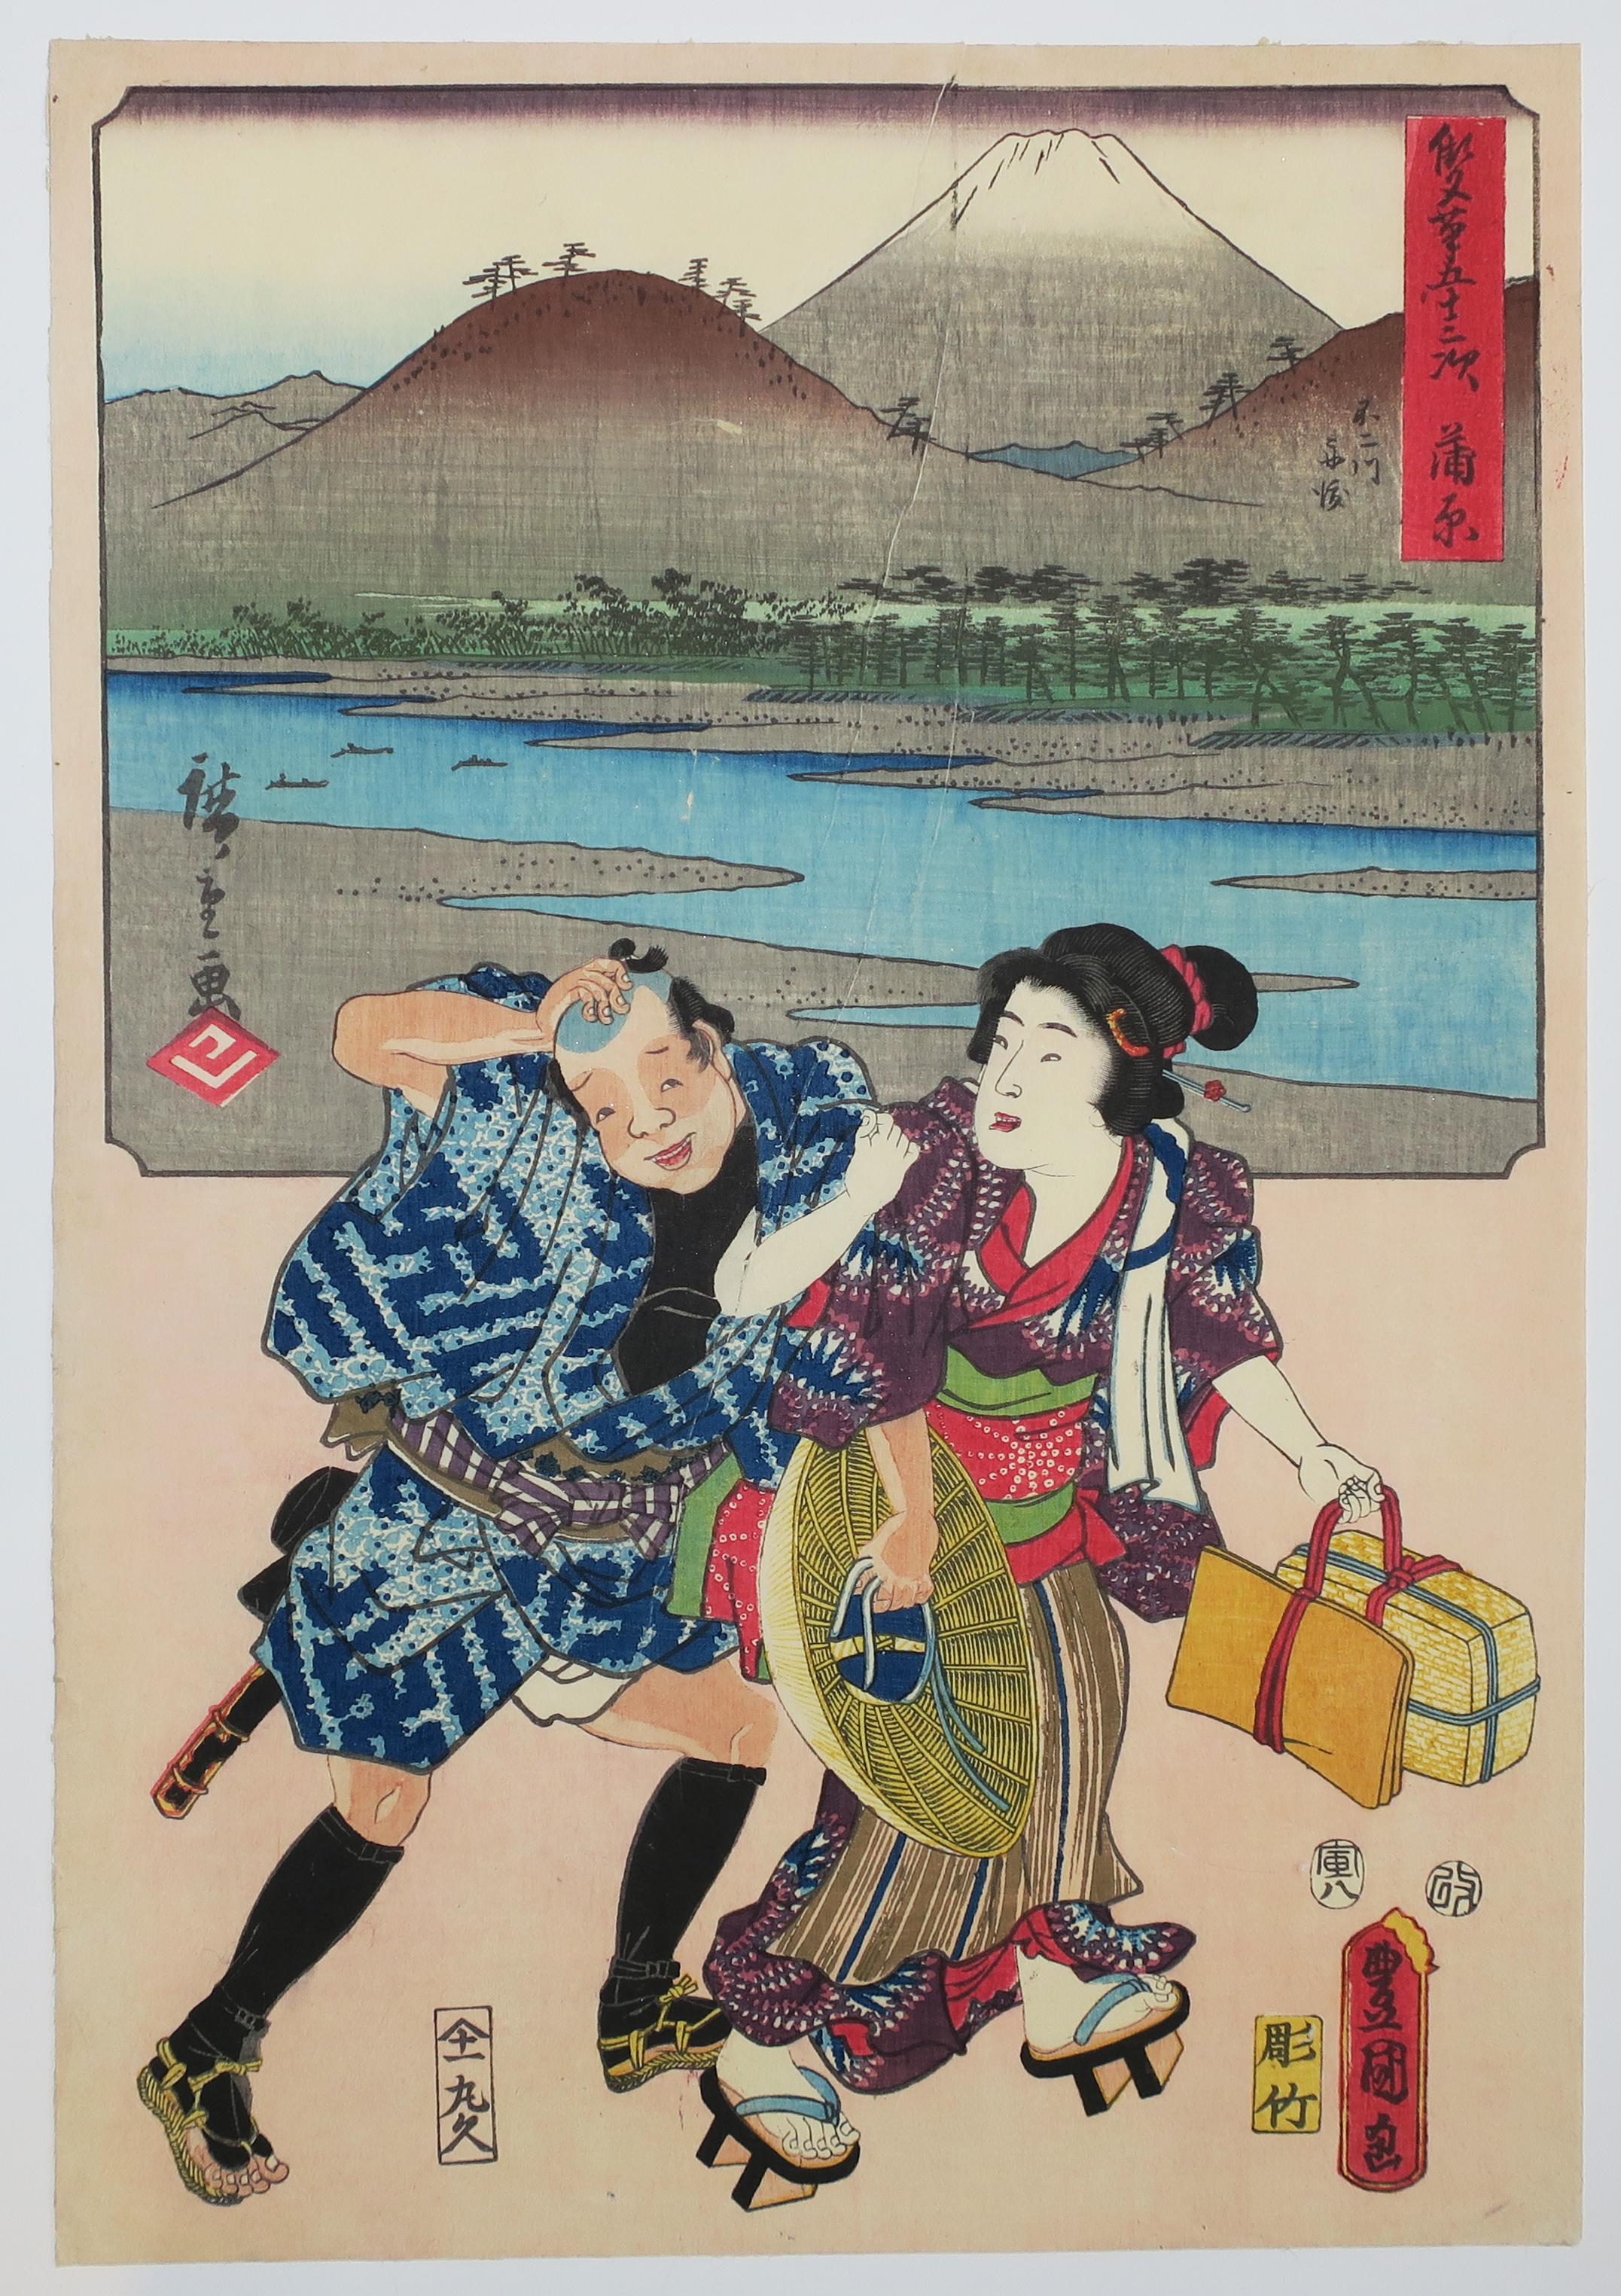 Utagawa Hiroshige (Ando Hiroshige) Landscape Print - Kanbara, Ferry sur la rivière Fuji & attirer des clients pour une auberge. 1854